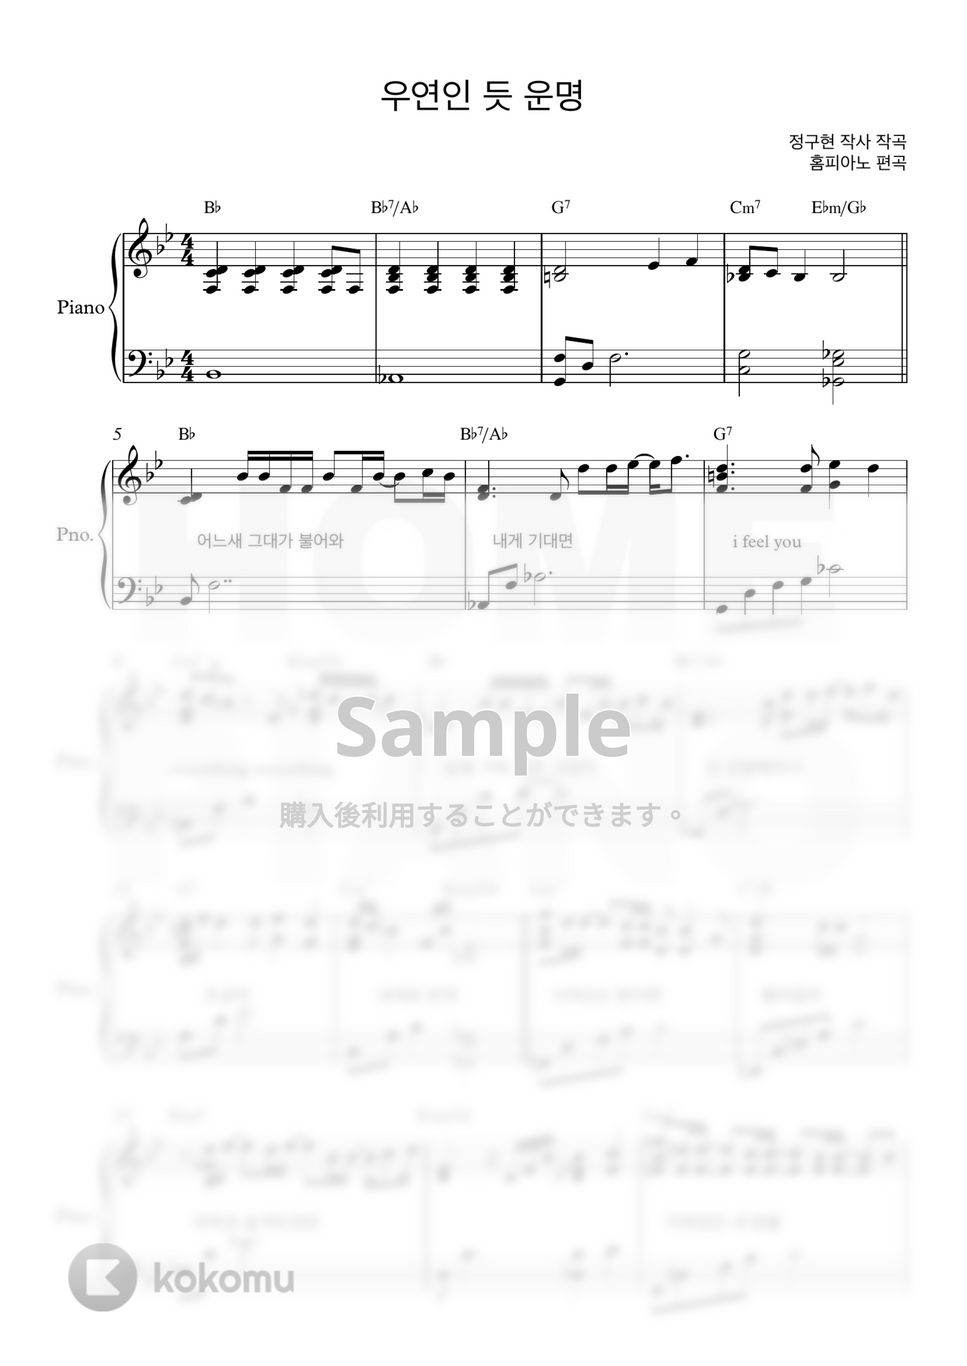 10cm - 偶然のような運命 (愛の不時着 OST) (上級) by HOME PIANO